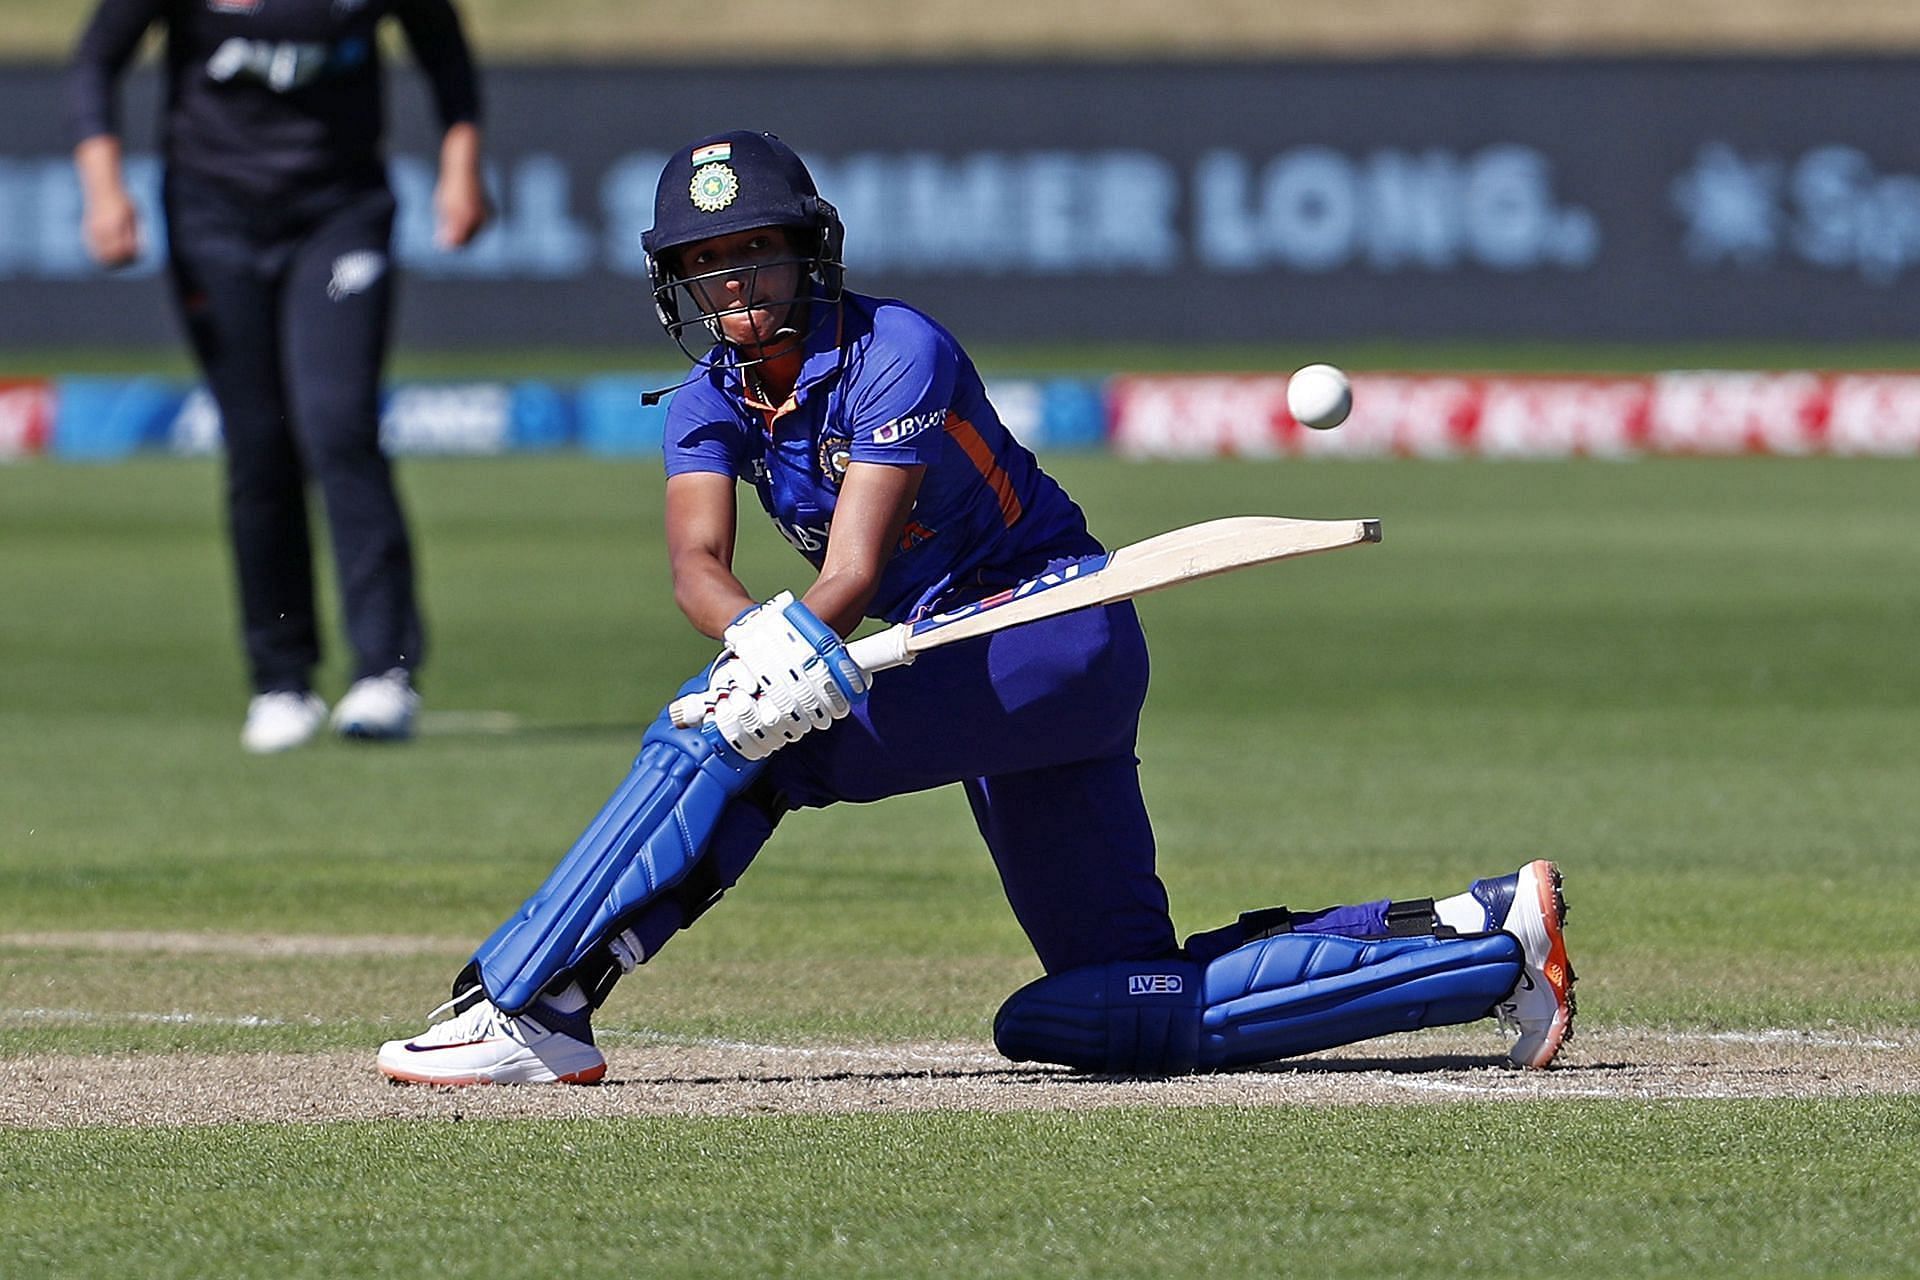 हरमनप्रीत कौर ने एमएस धोनी के 41 टी20 इंटरनेशनल जीत के रिकॉर्ड को तोड़ा